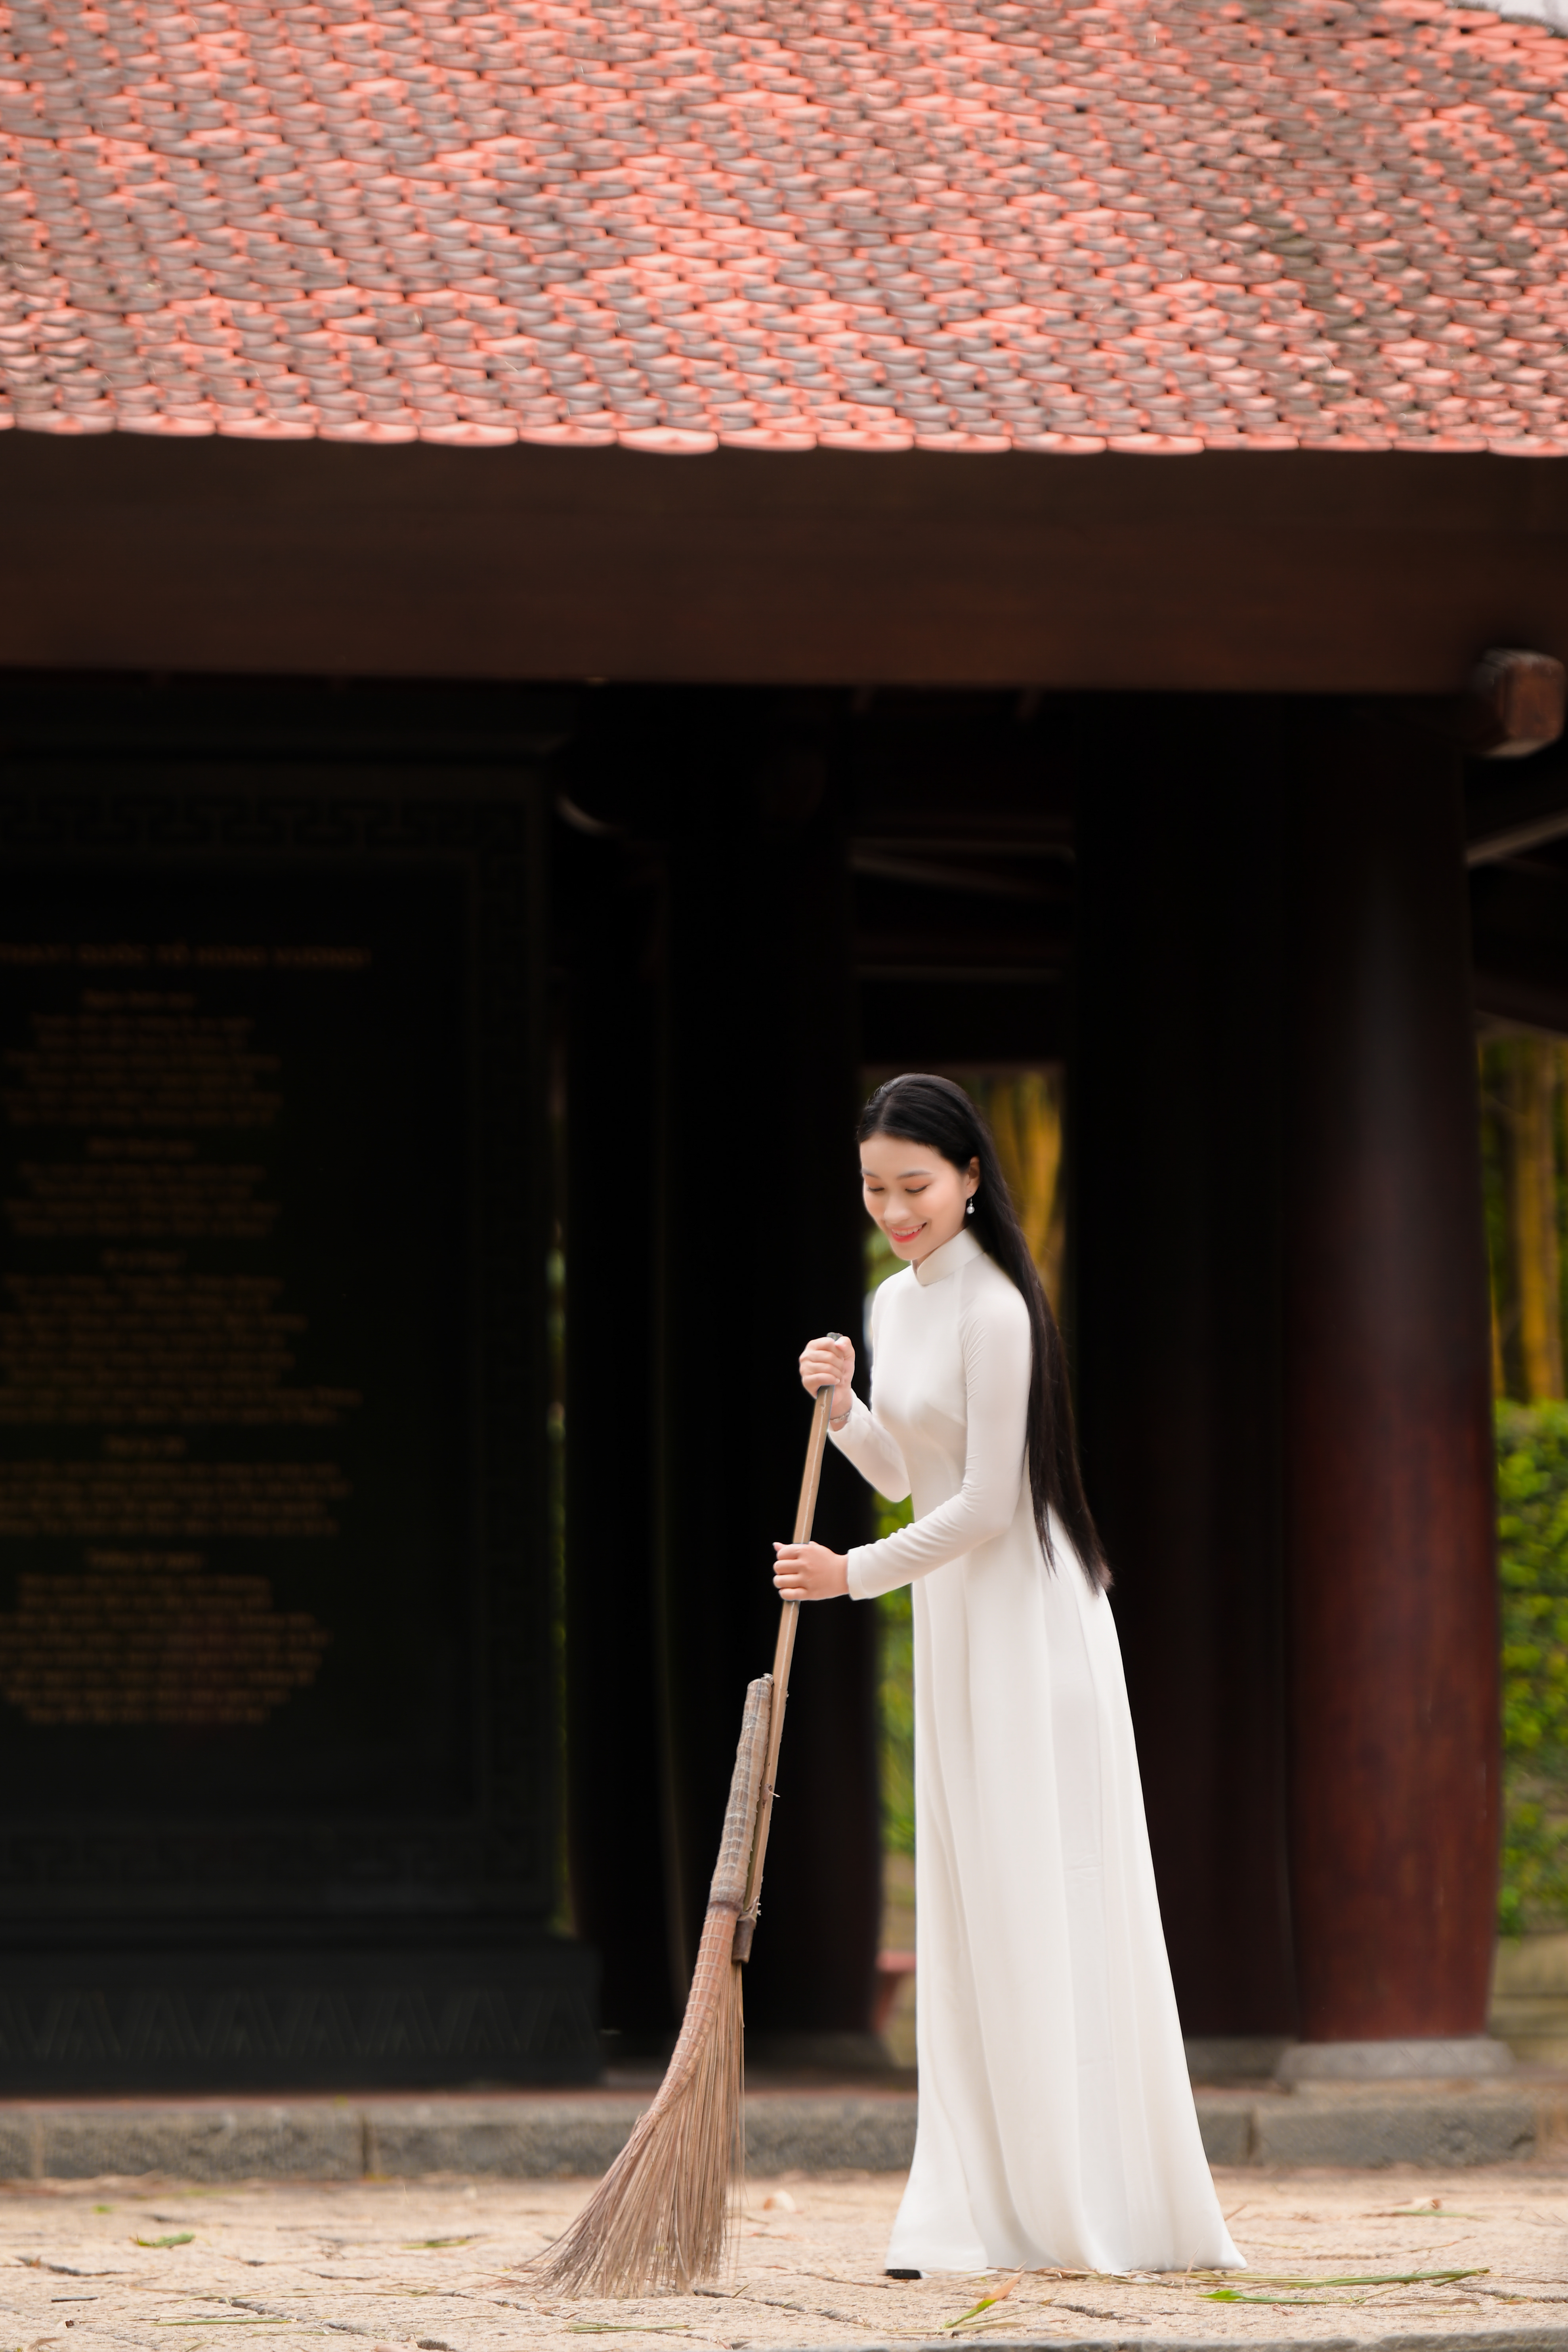 Đền Hùng và áo dài là một nét đẹp văn hóa truyền thống của Việt Nam.